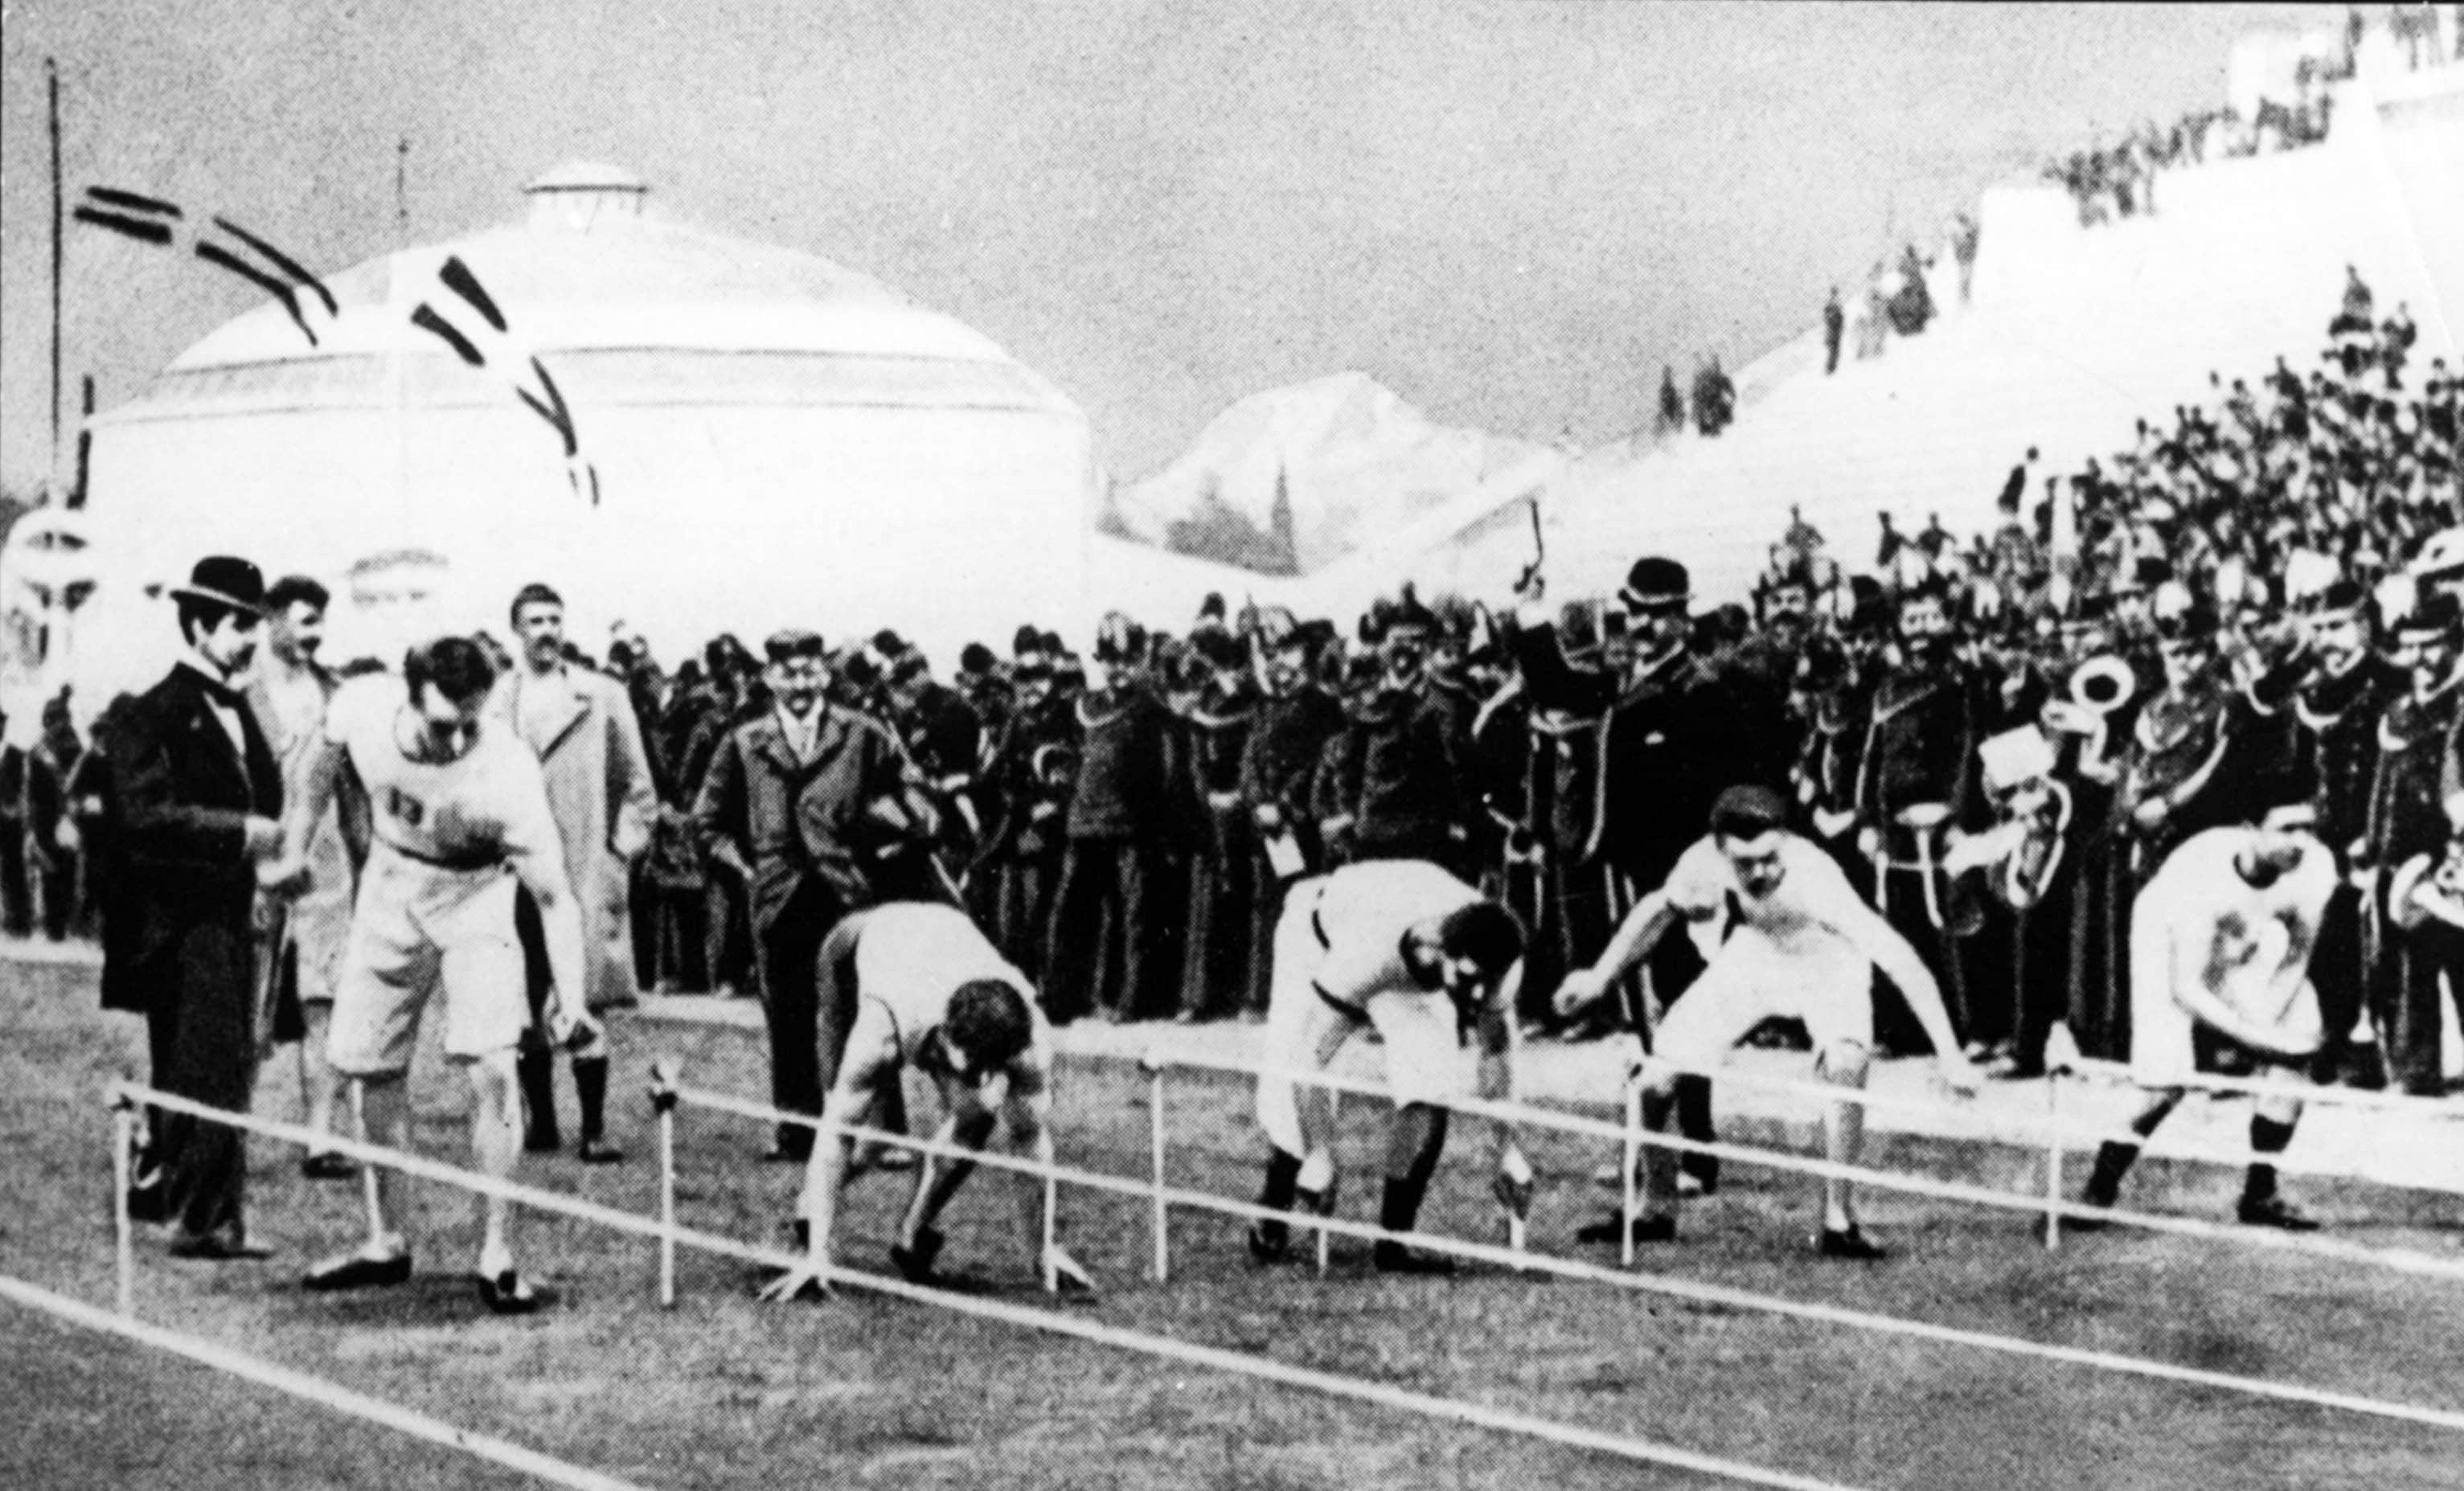 Partenza della gara dei 100 metri piani. Per la prima volta nella storia gli atleti poggiano le mani per terra prima del via